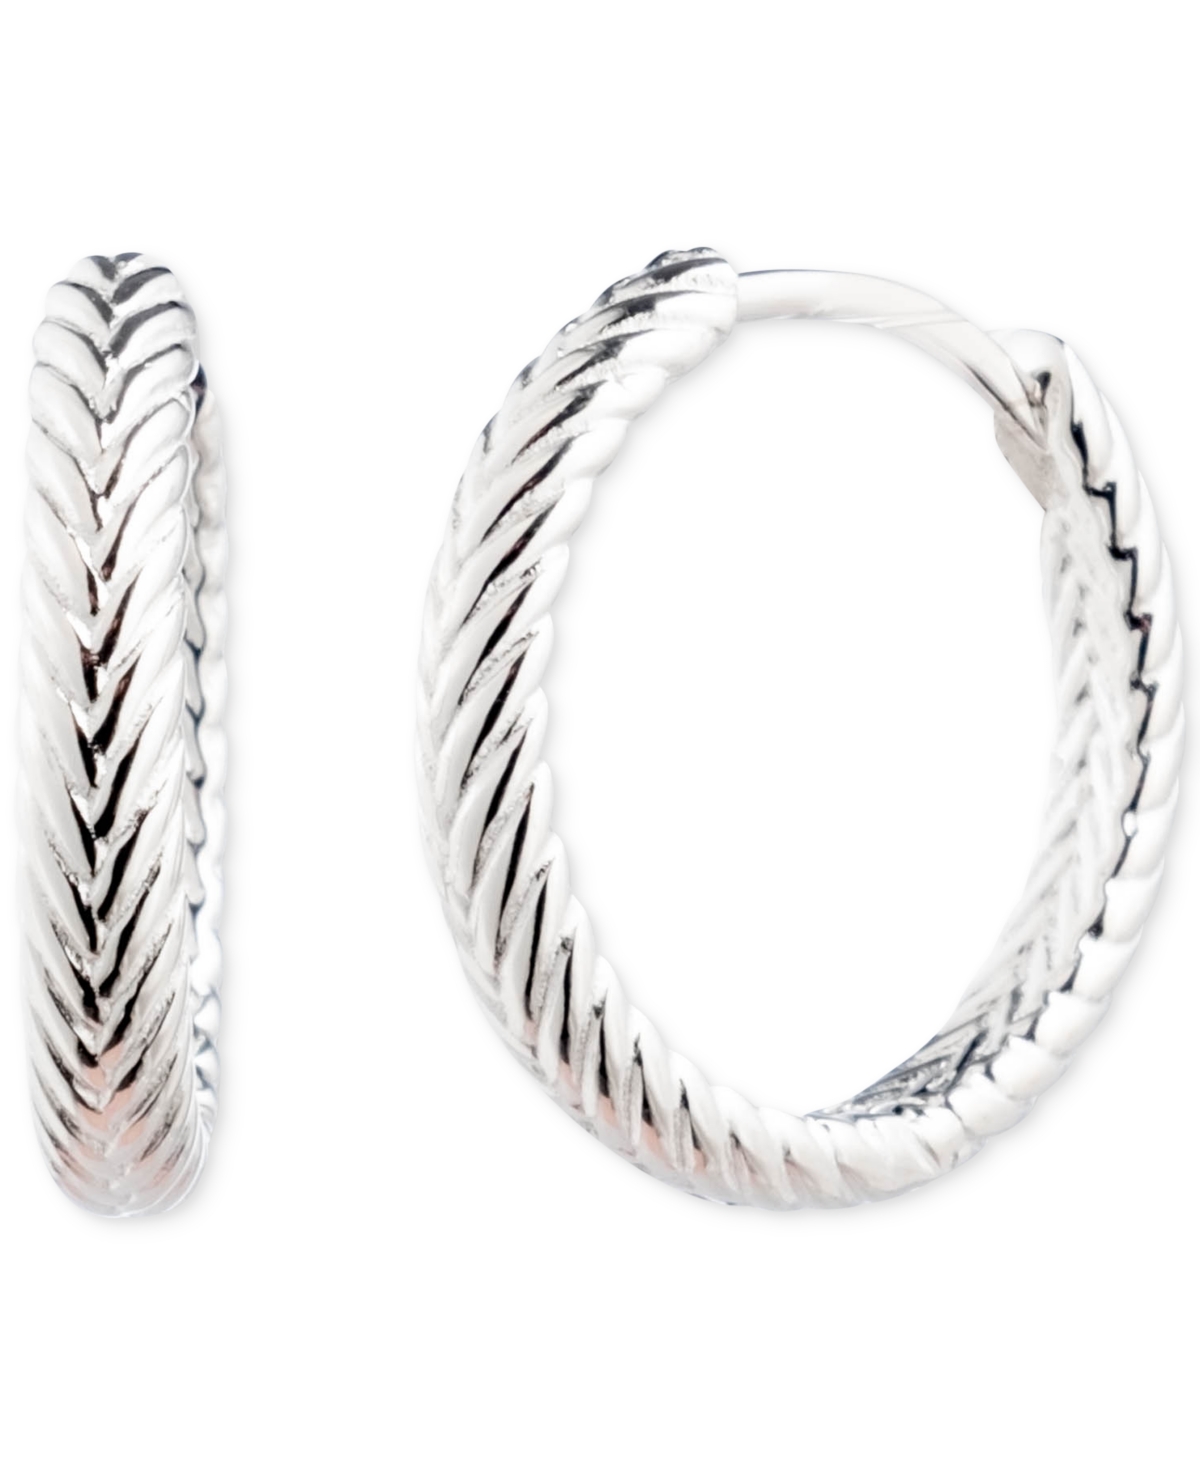 Lauren Ralph Lauren Herringbone-Look Huggie Hoop Earrings in Sterling Silver, 0.64" - Sterling Silver